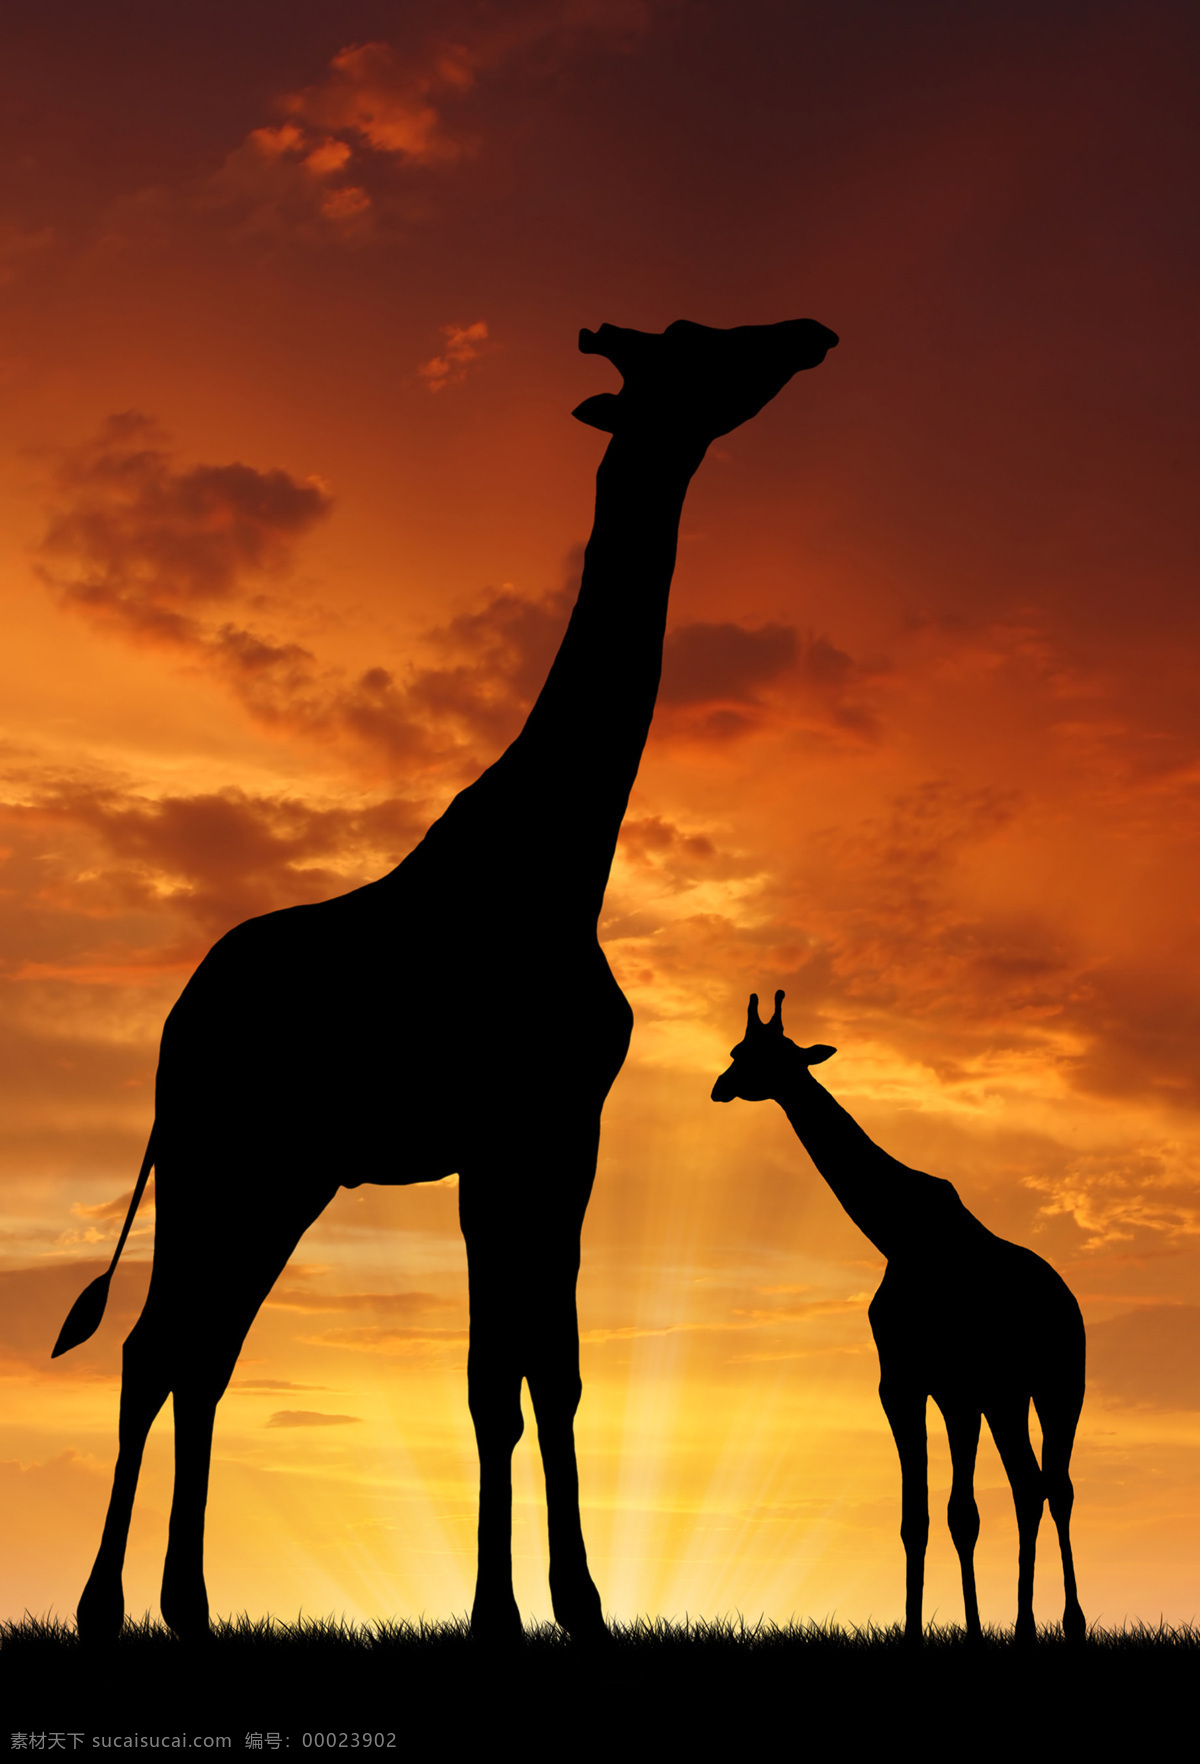 非洲 草原 上 长颈鹿 非洲草原风景 非洲动物 美丽风景 黄昏 动物剪影 陆地动物 生物世界